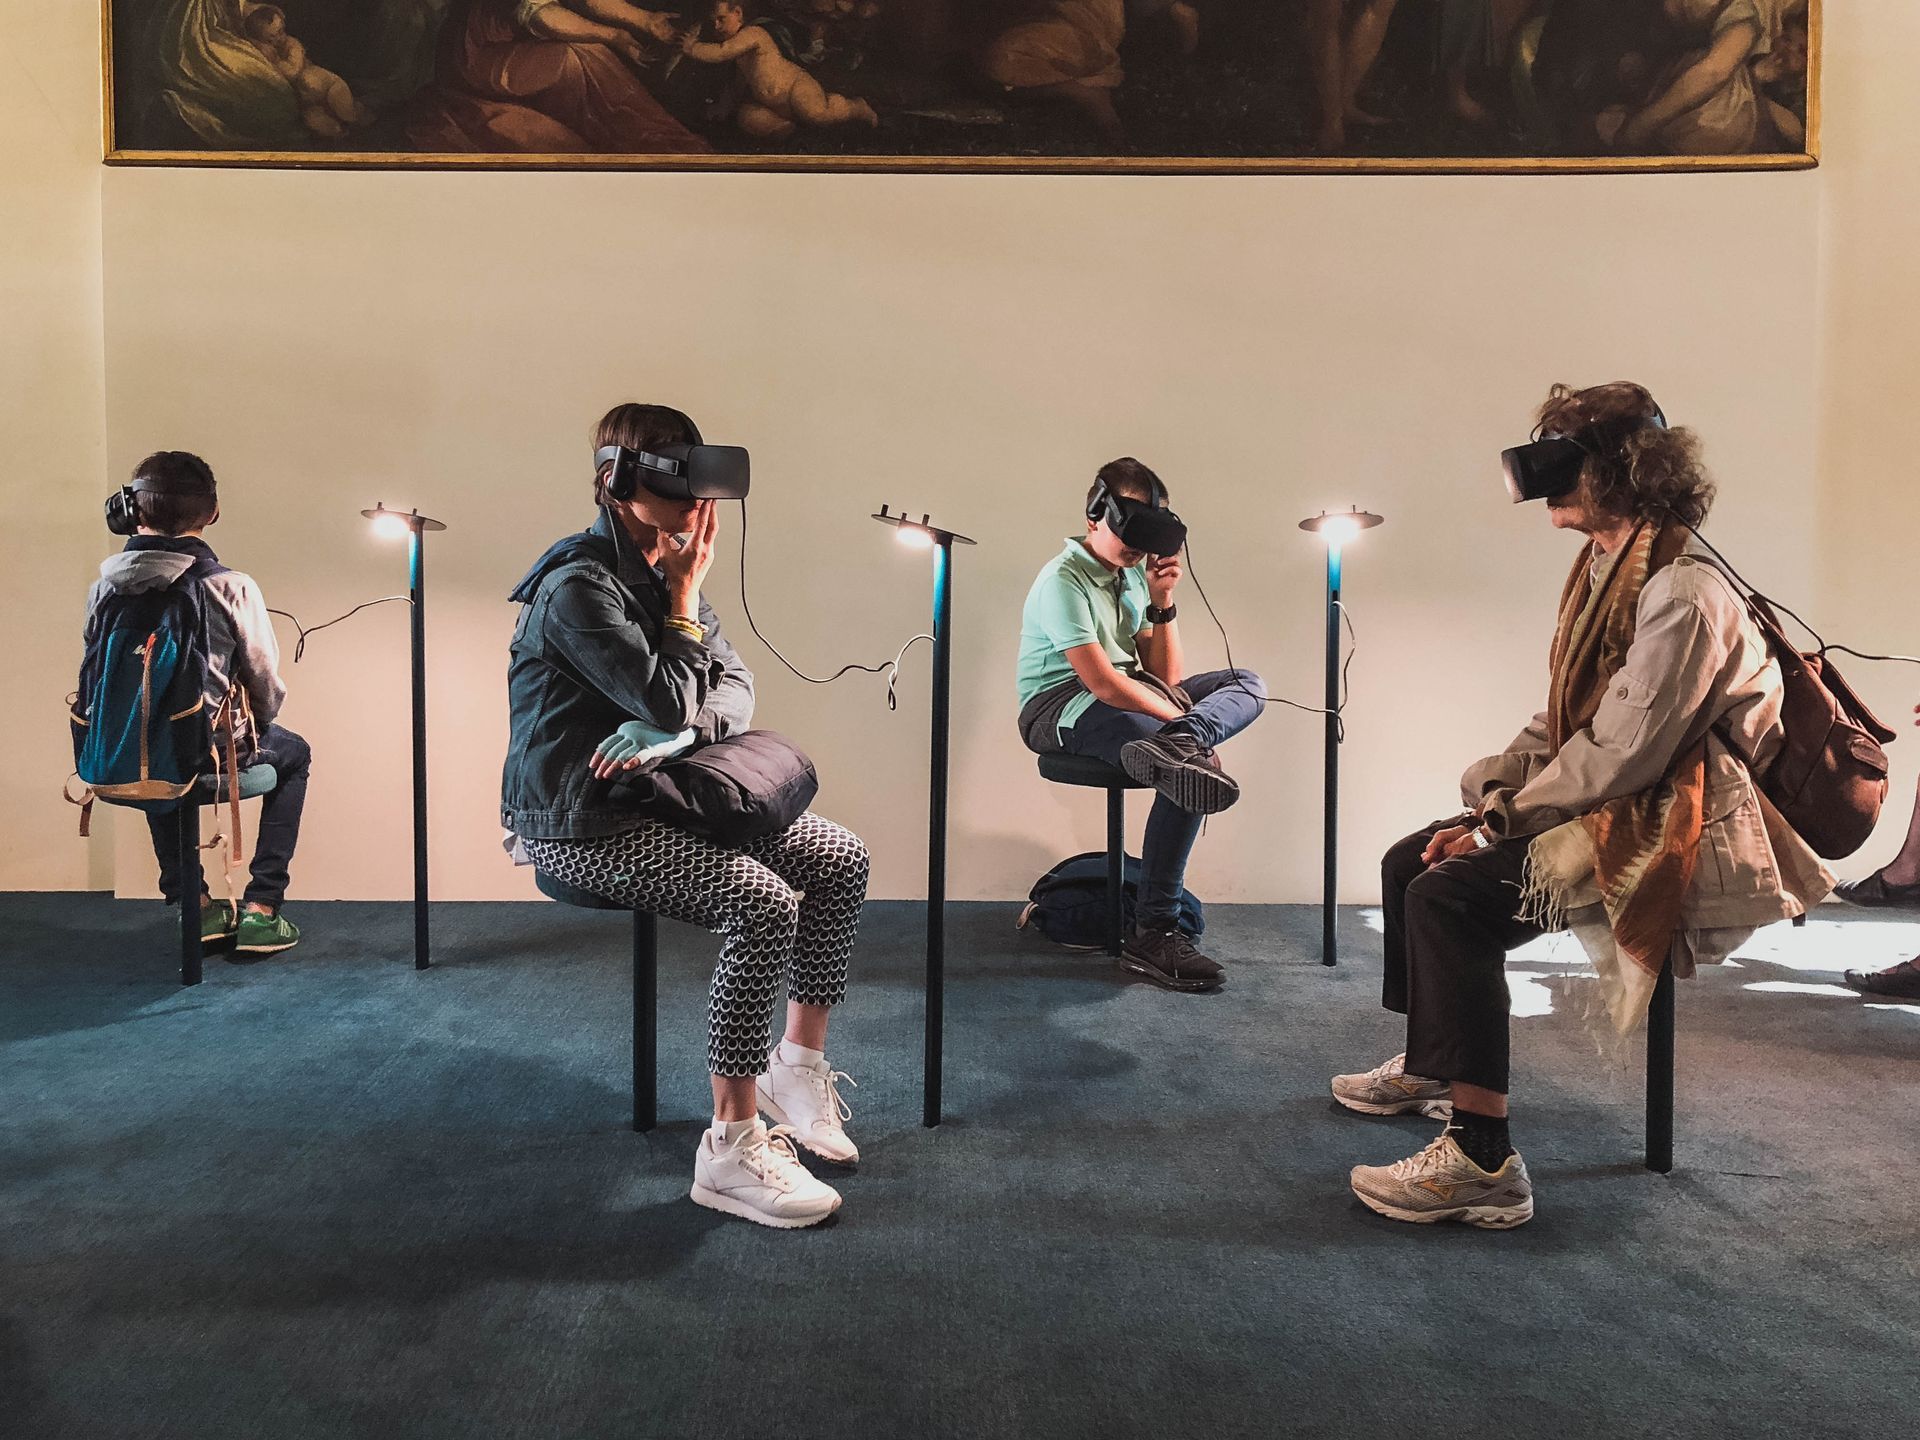 grupo de personas jugando con realidad virtual en un local comercial